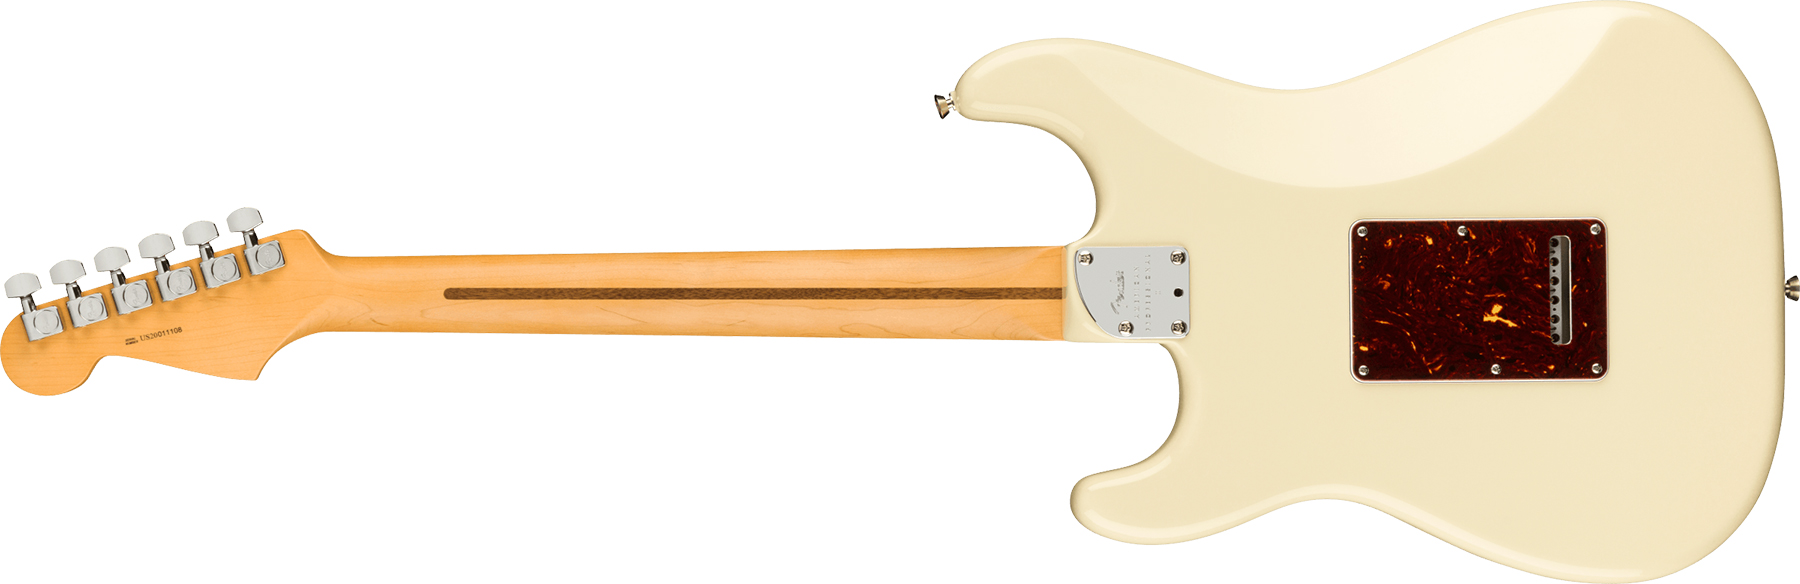 Fender Strat American Professional Ii Lh Gaucher Usa Mn - Olympic White - Linkshandige elektrische gitaar - Variation 1